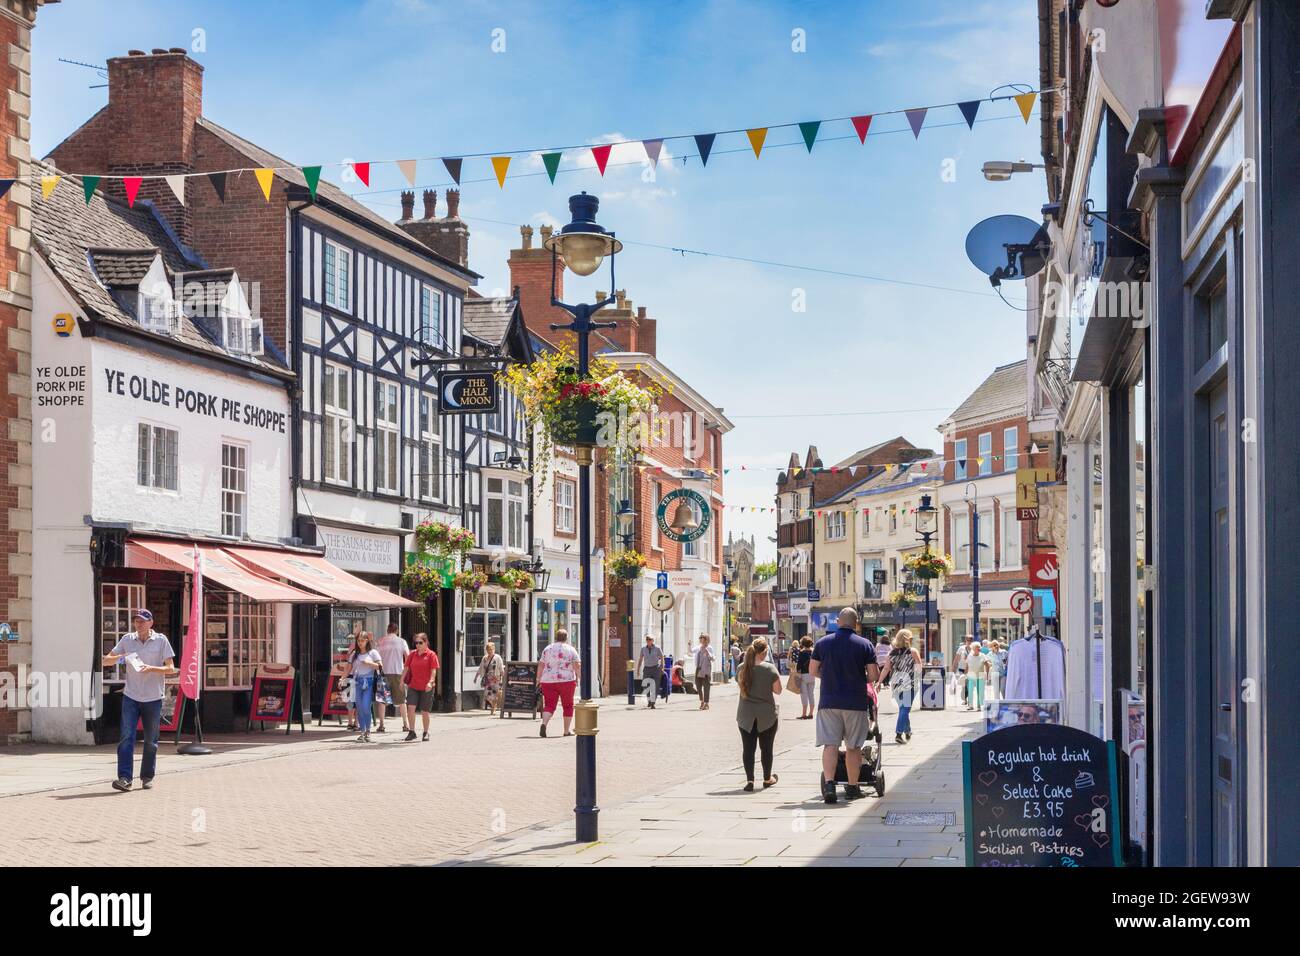 4 luglio 2019: Melton Mowbray, Leicestershire, Regno Unito - gente che acquista a Nottingham Street in una calda giornata estiva. YE Olde Pine Shoppe sulla sinistra. Foto Stock